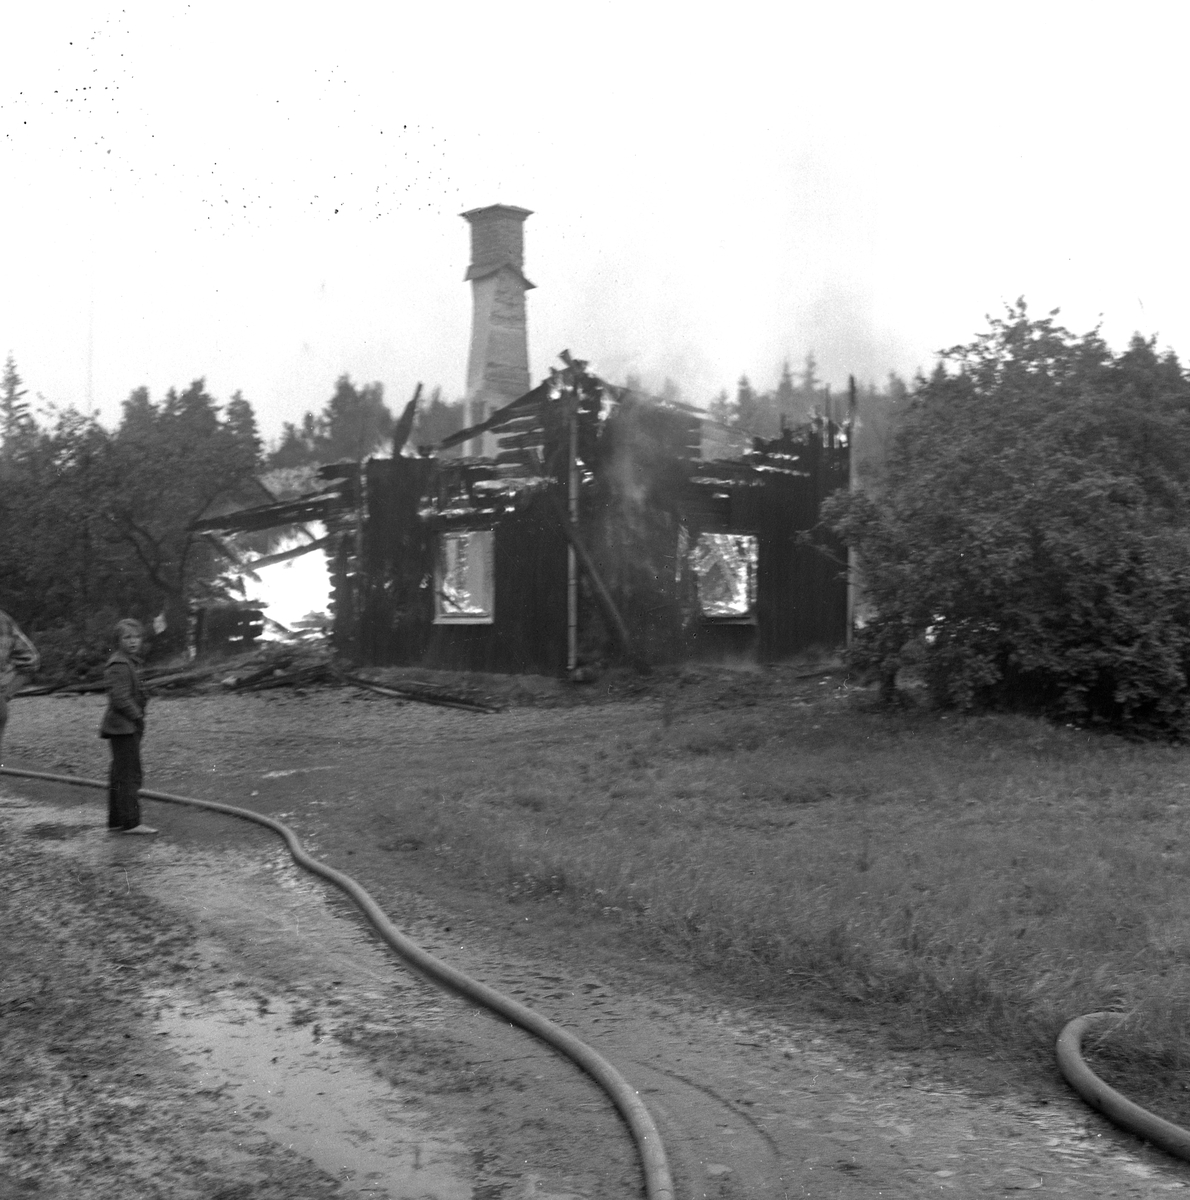 Åsknedslag i Glanshammar.
25 juli 1958.